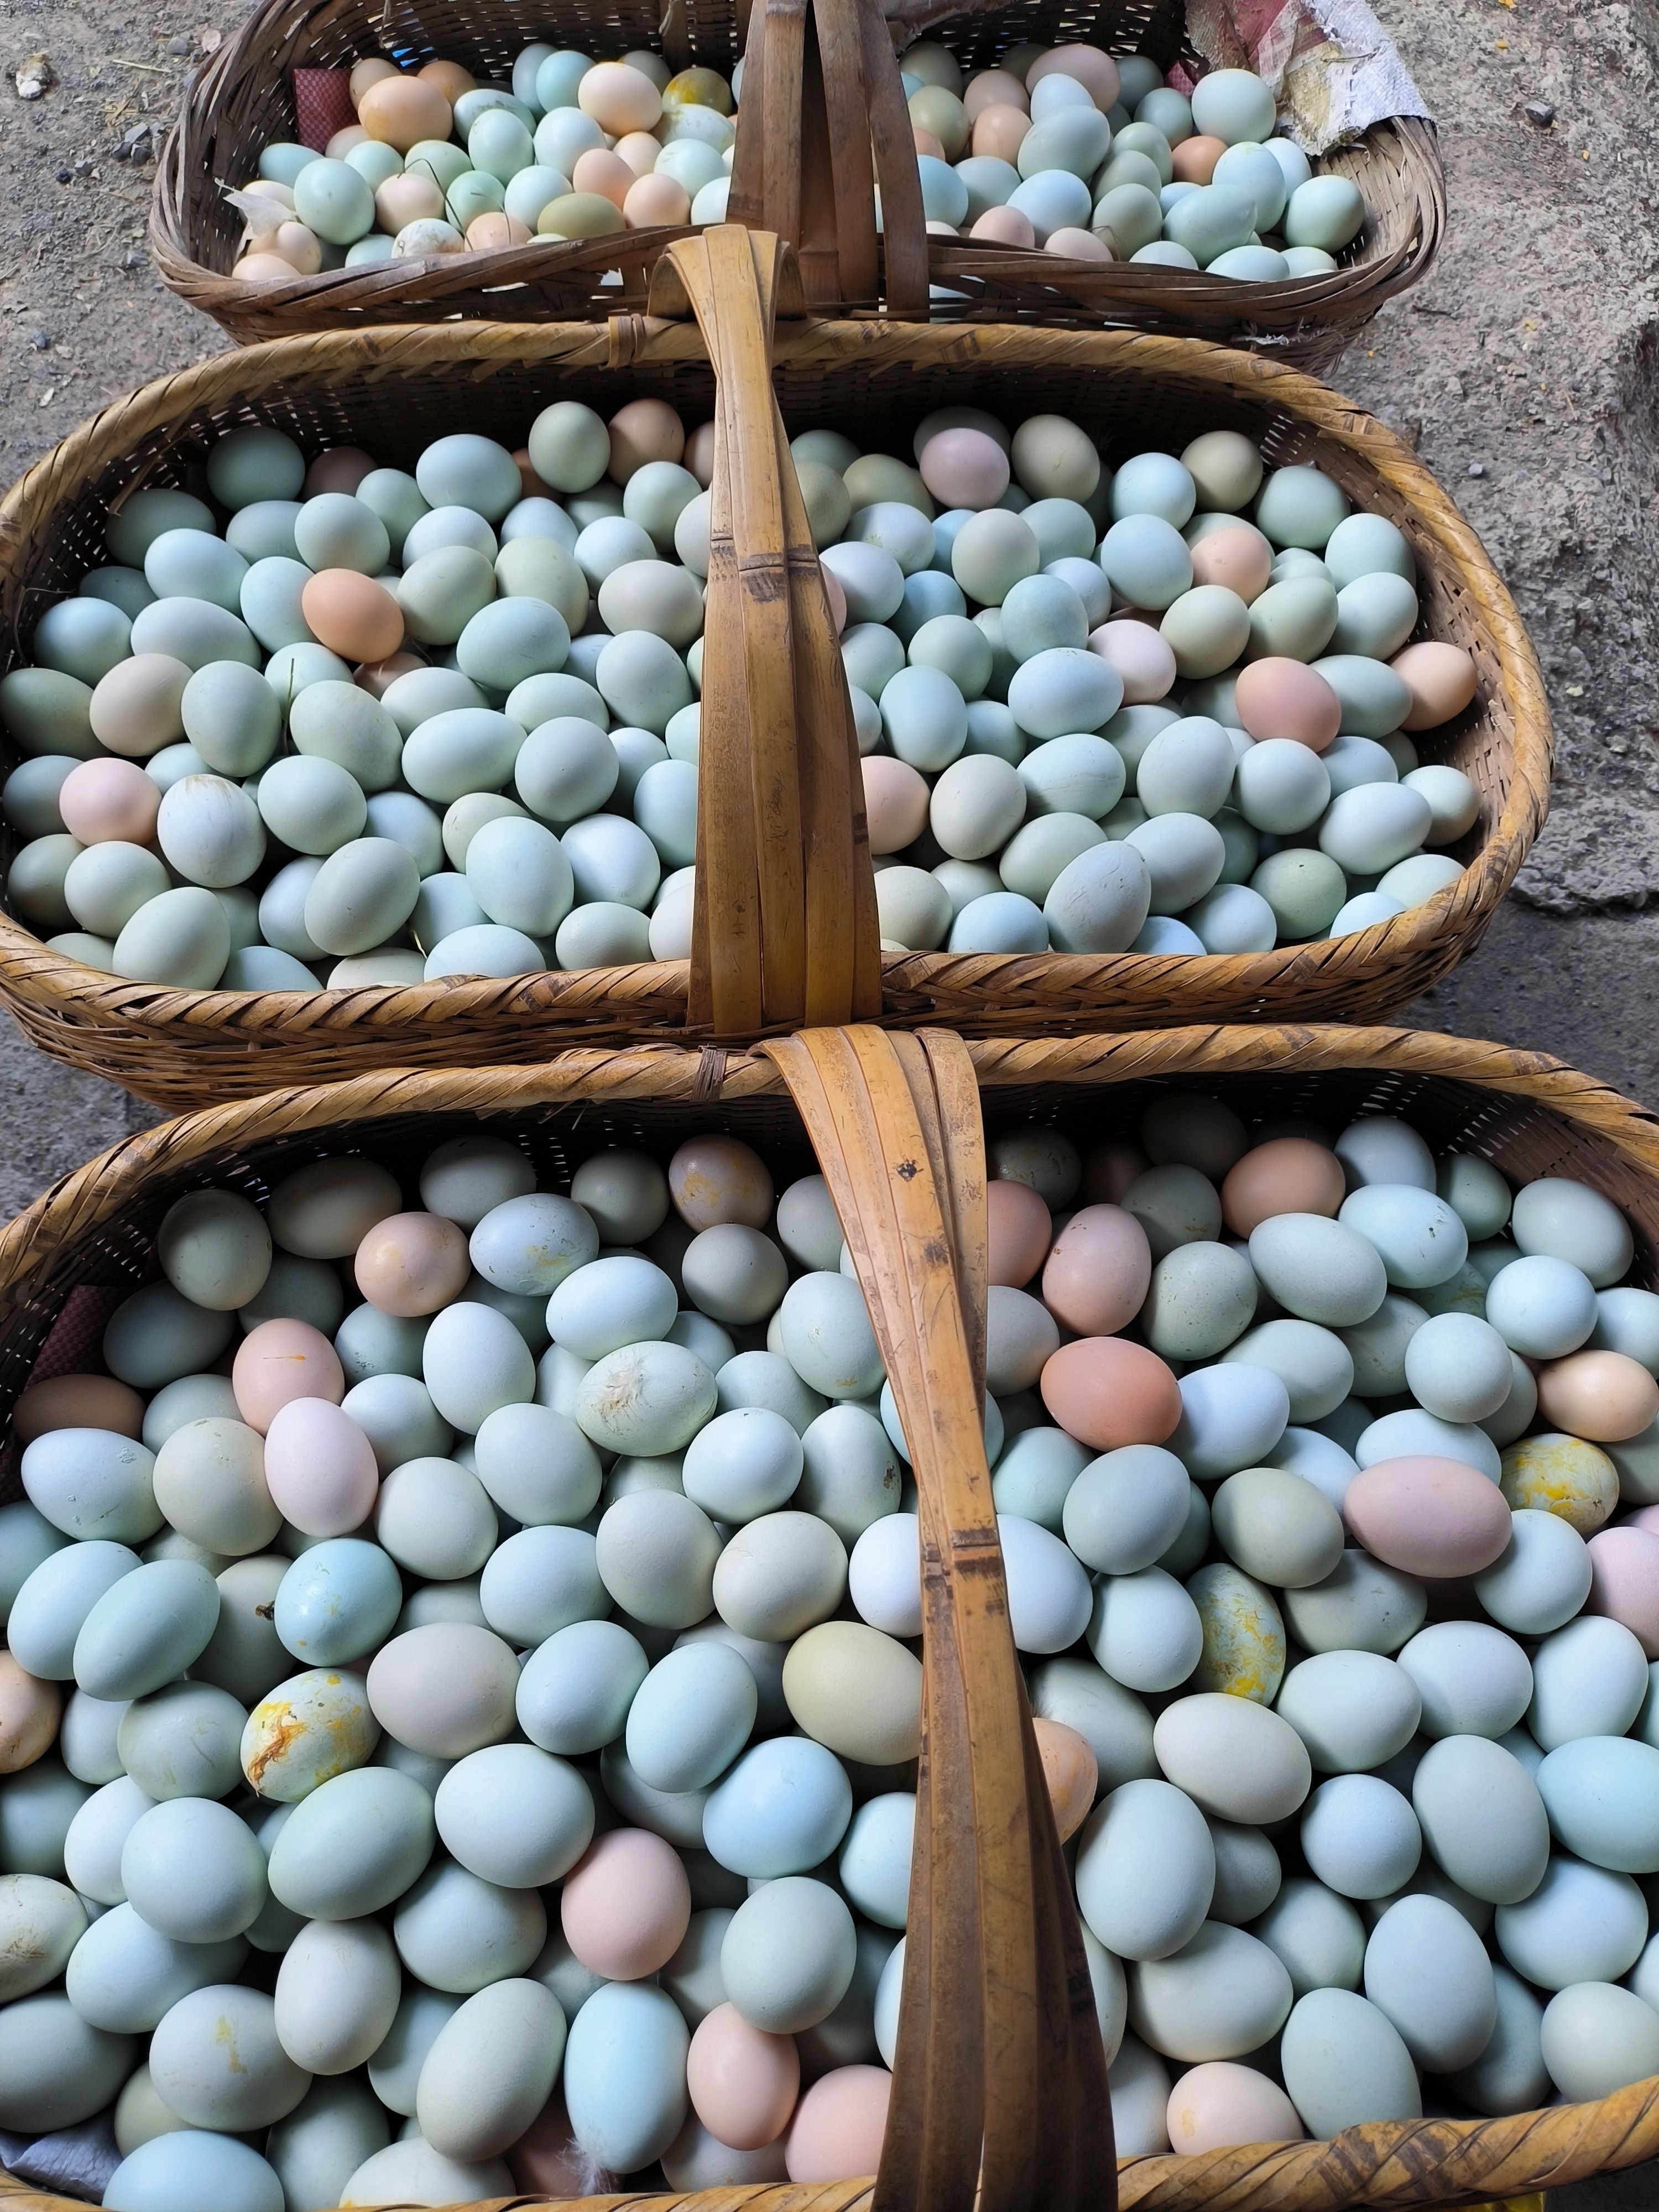 京山市绿壳蛋 初生蛋小绿小码 绿壳鸡蛋生态林地散养土鸡蛋420枚